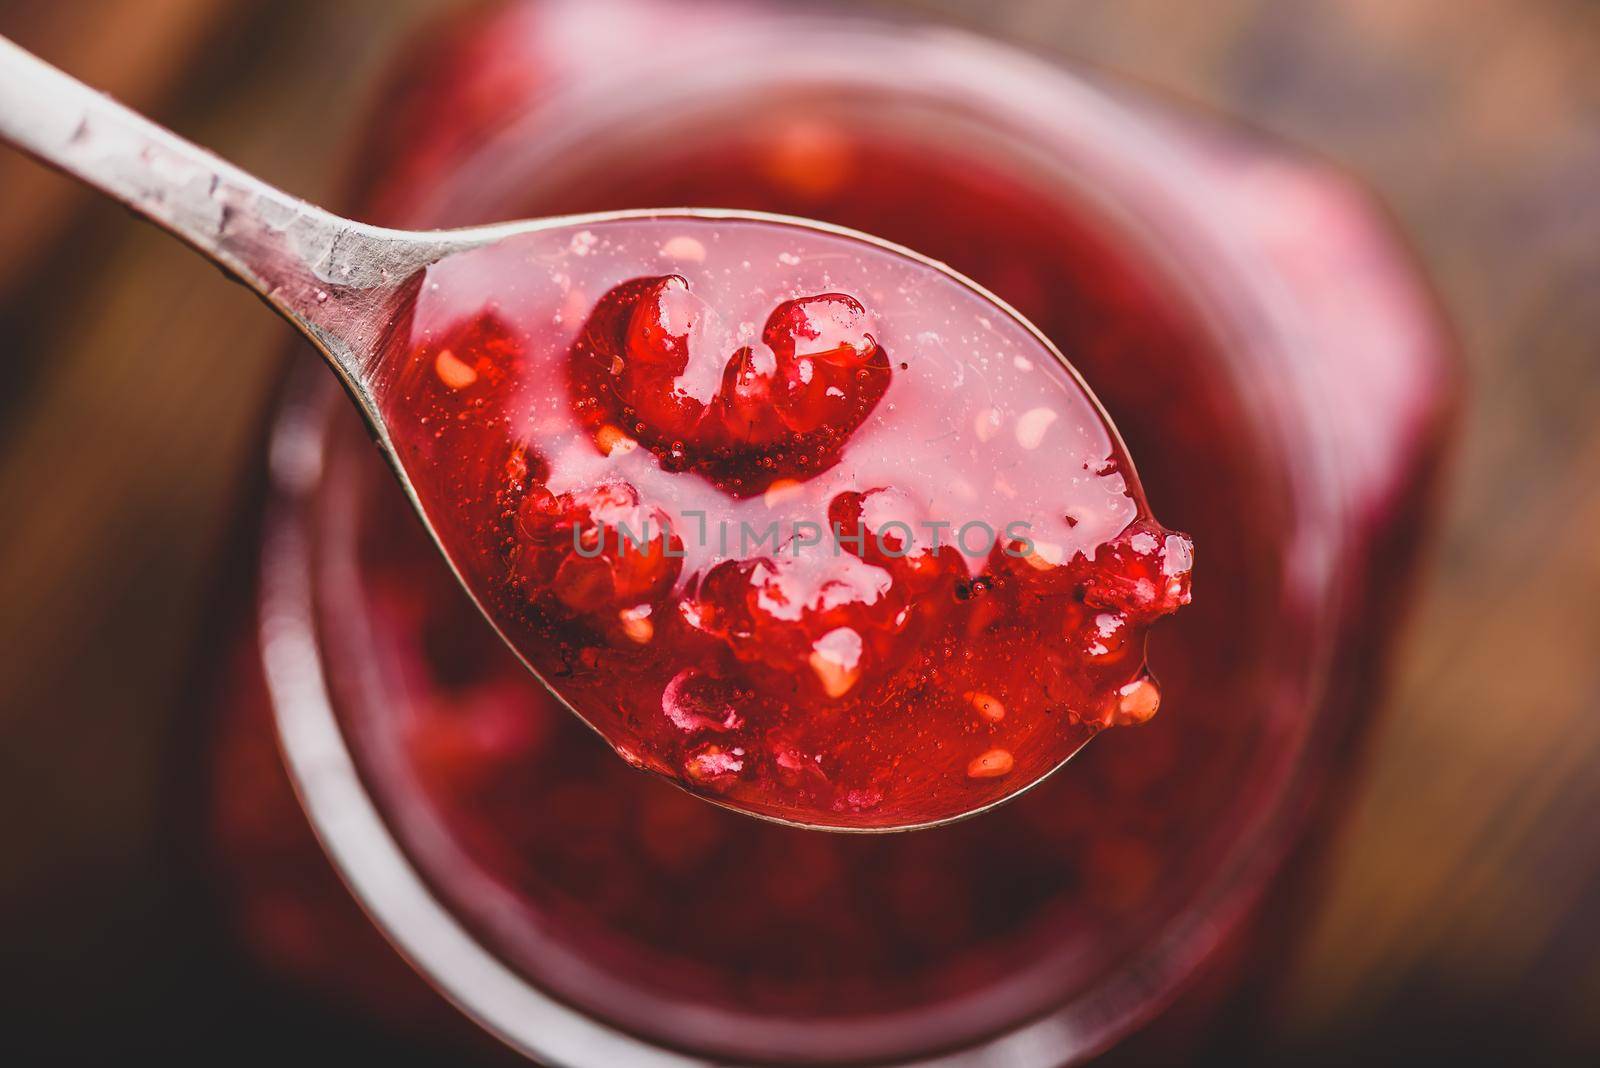 Spoonful of homemade raspberry jam by Seva_blsv